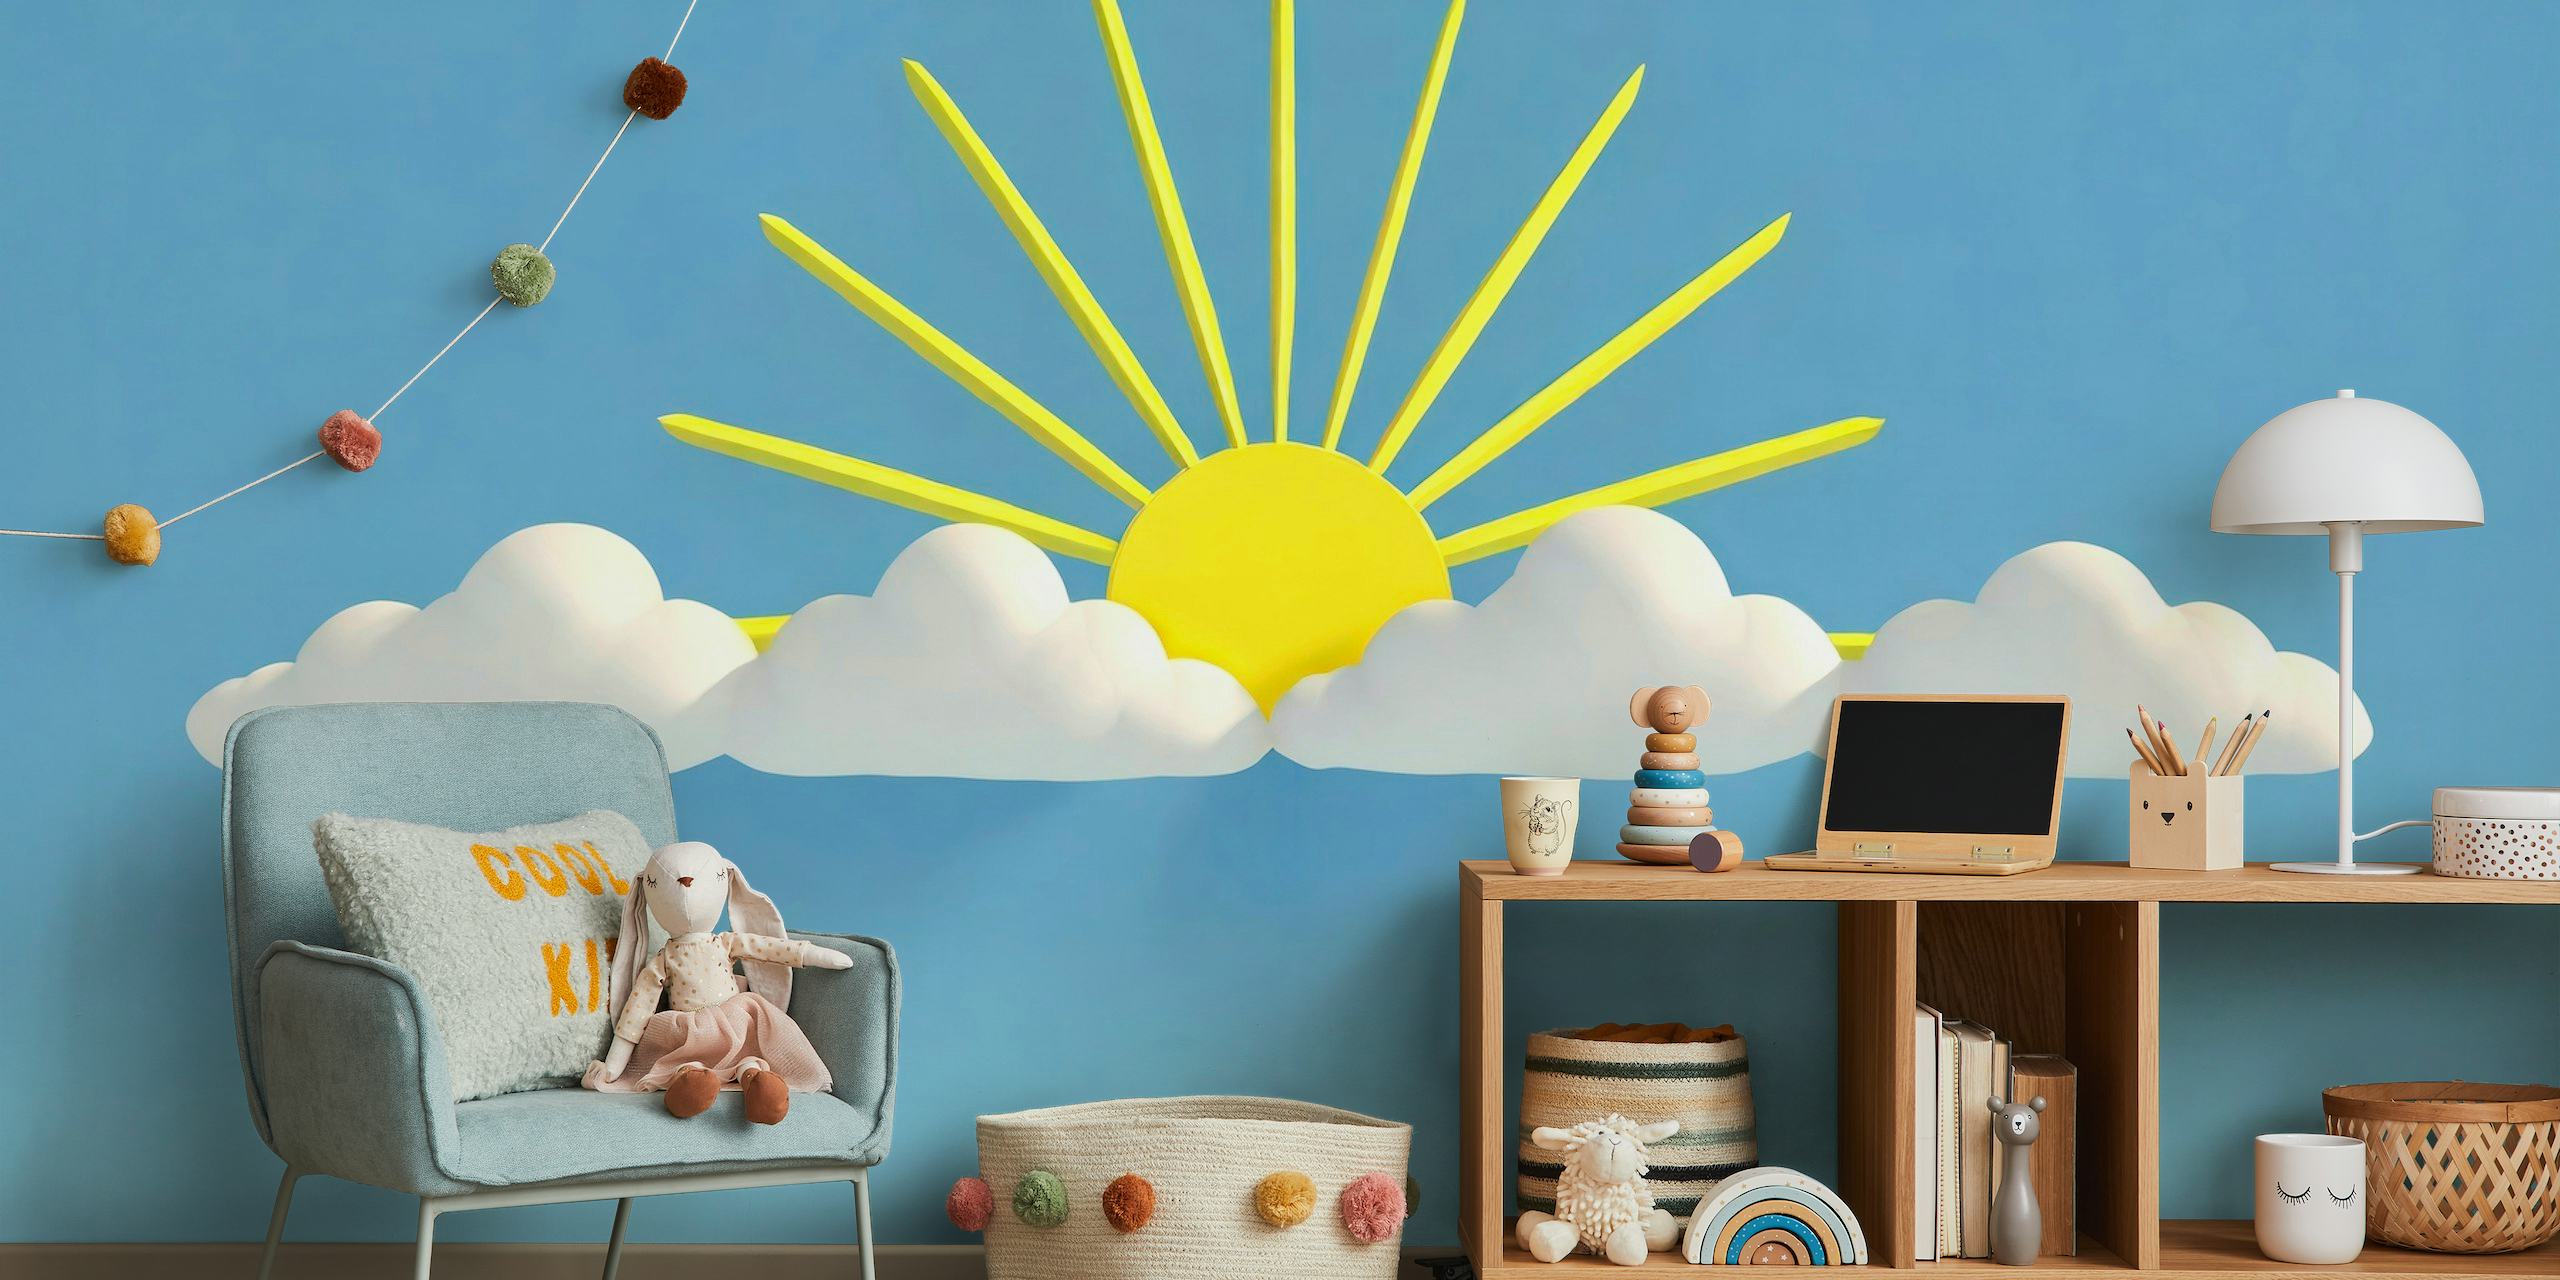 Illustratie van een lachende zon met stralen en witte wolken op een blauwe achtergrondmuurschildering.